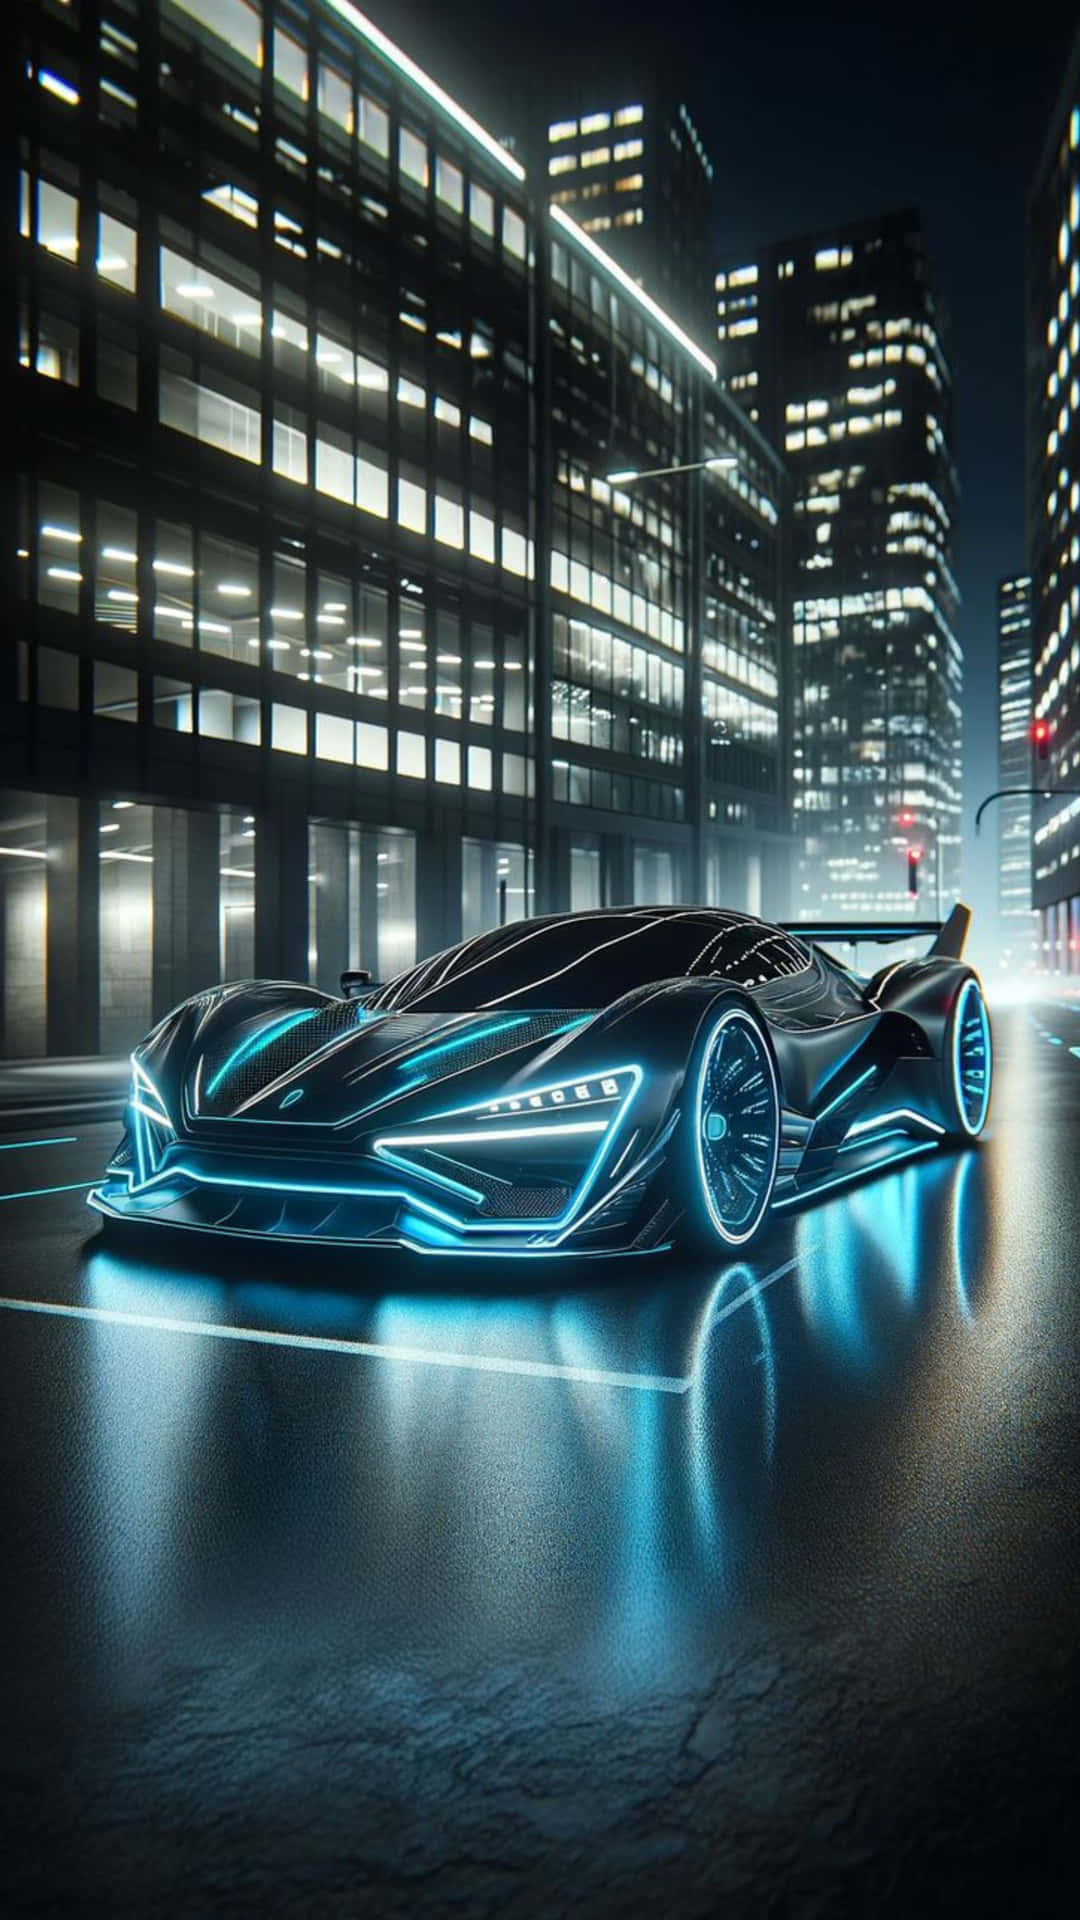 Neon Lit Lamborghini Futuristic Cityscape Wallpaper